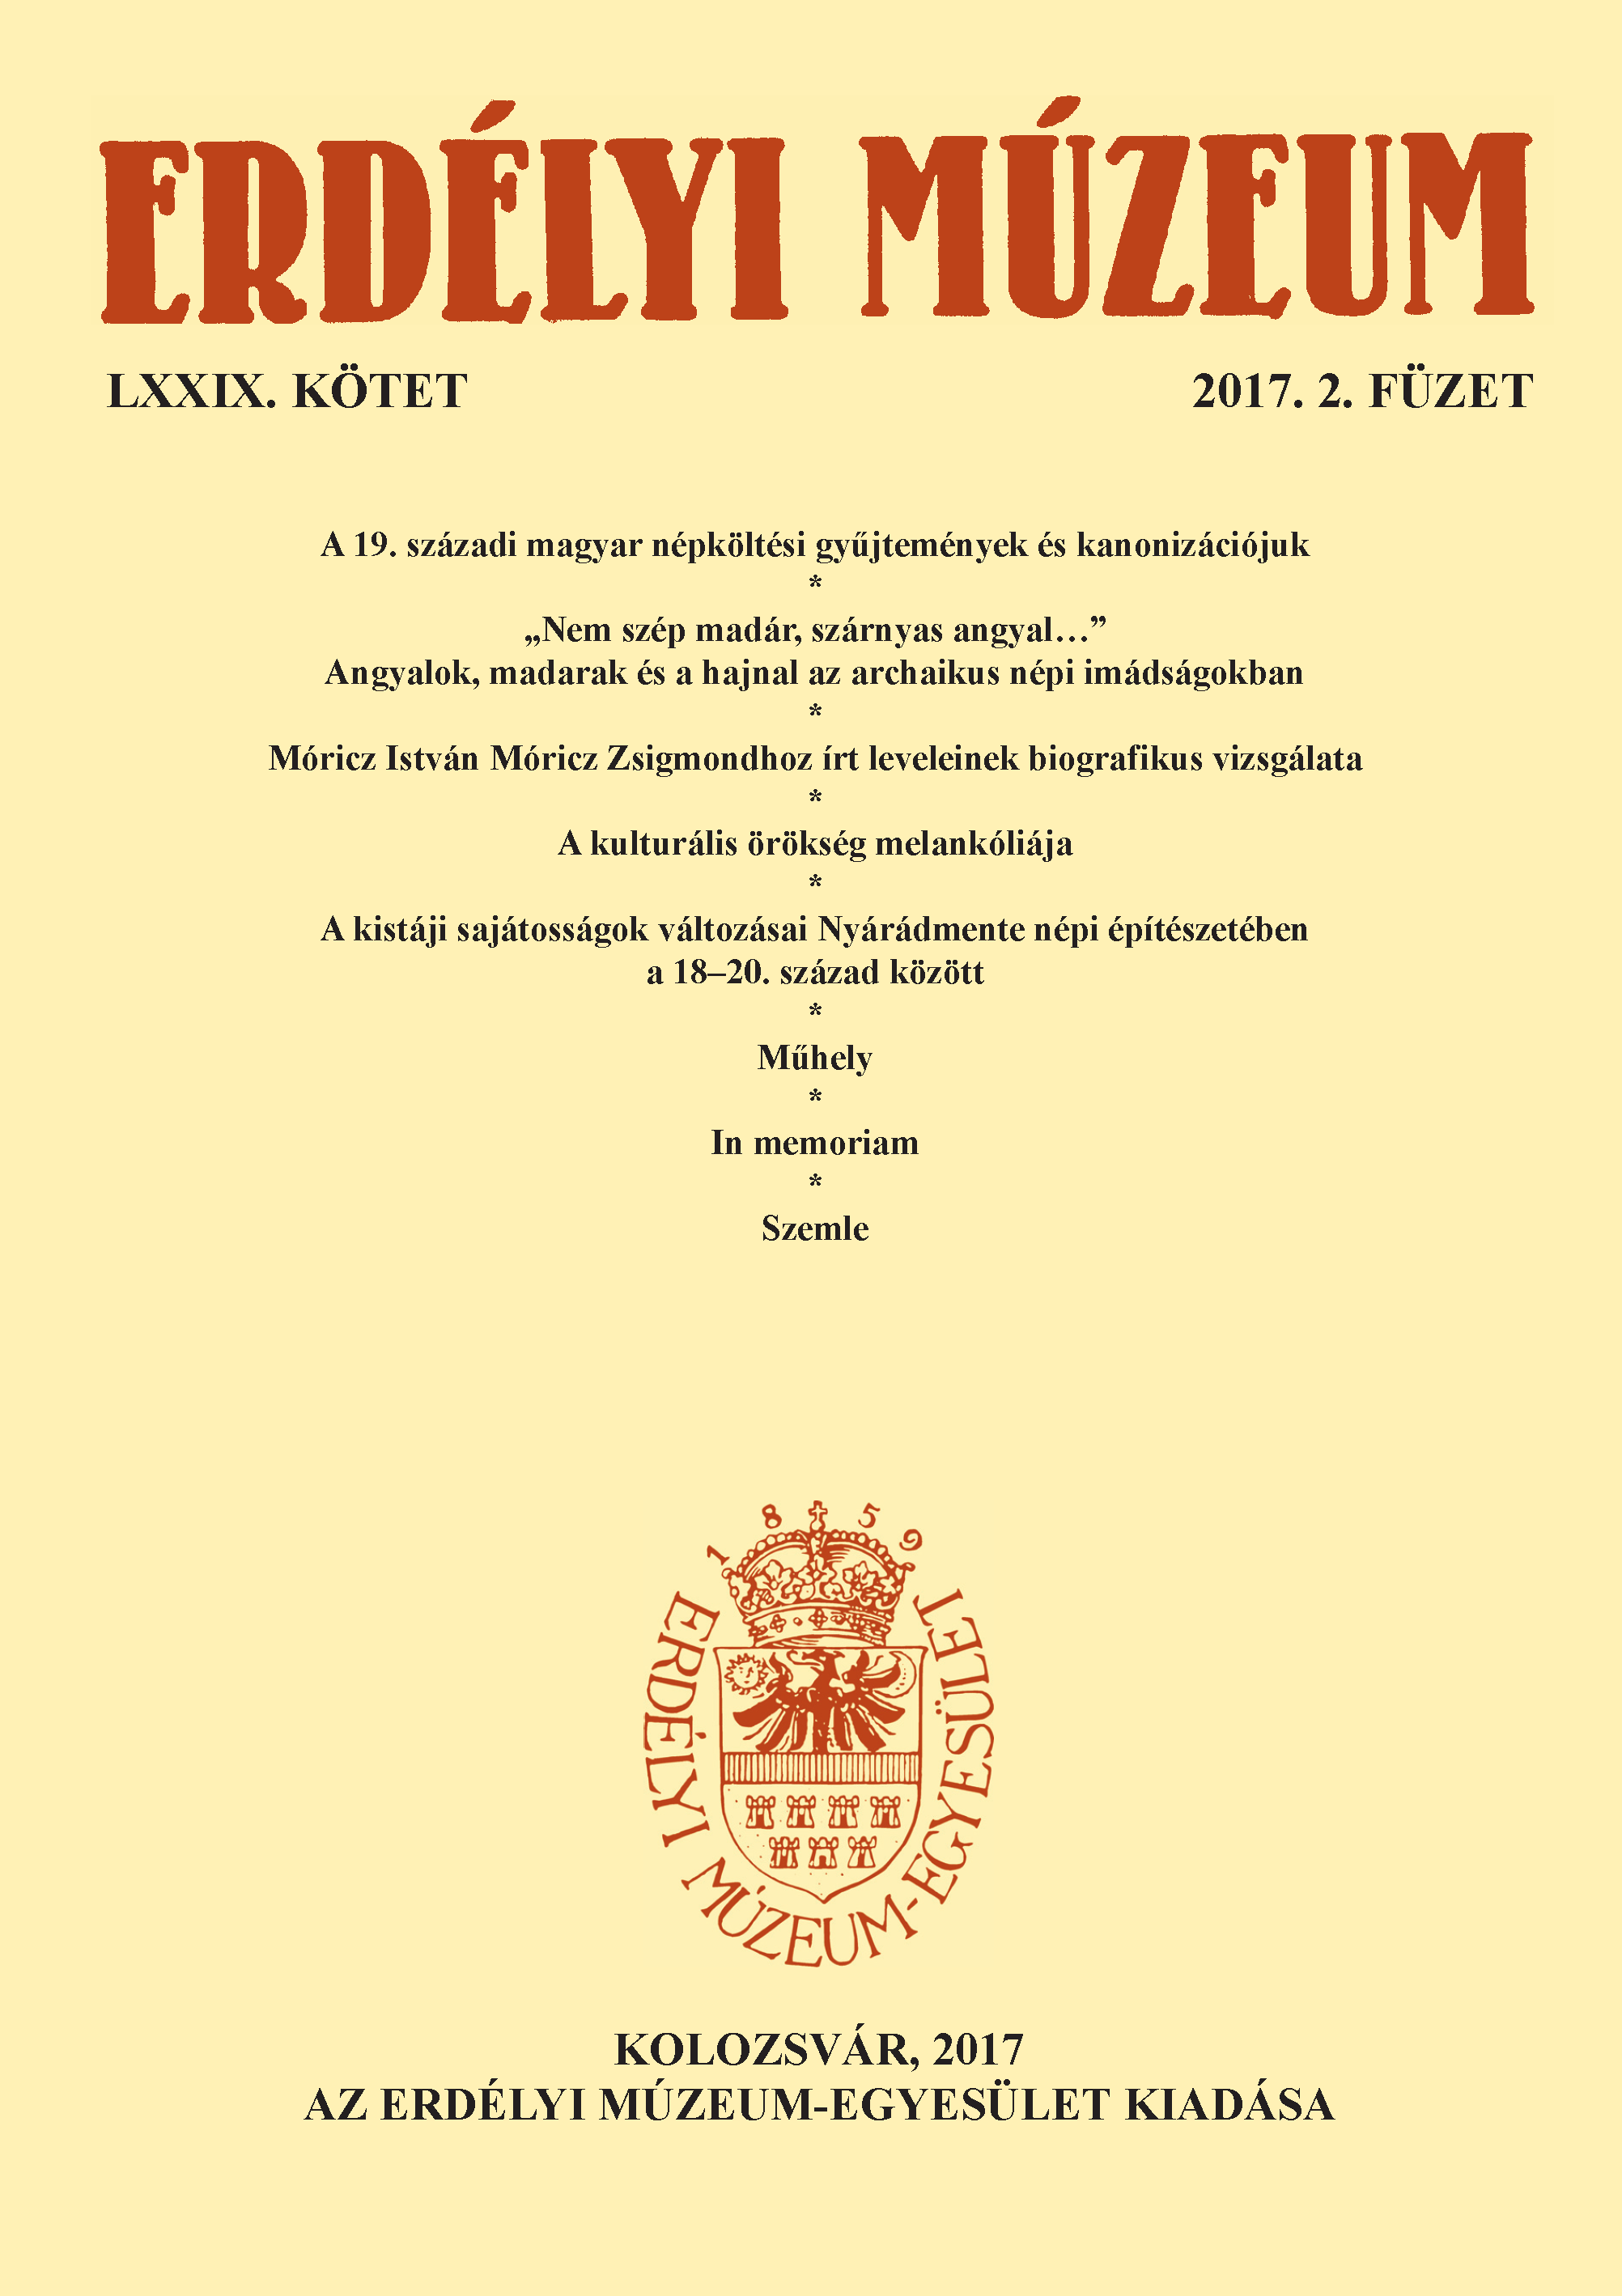 Letters of István Móricz to Zsigmond Móricz – Biographical Narratives Cover Image